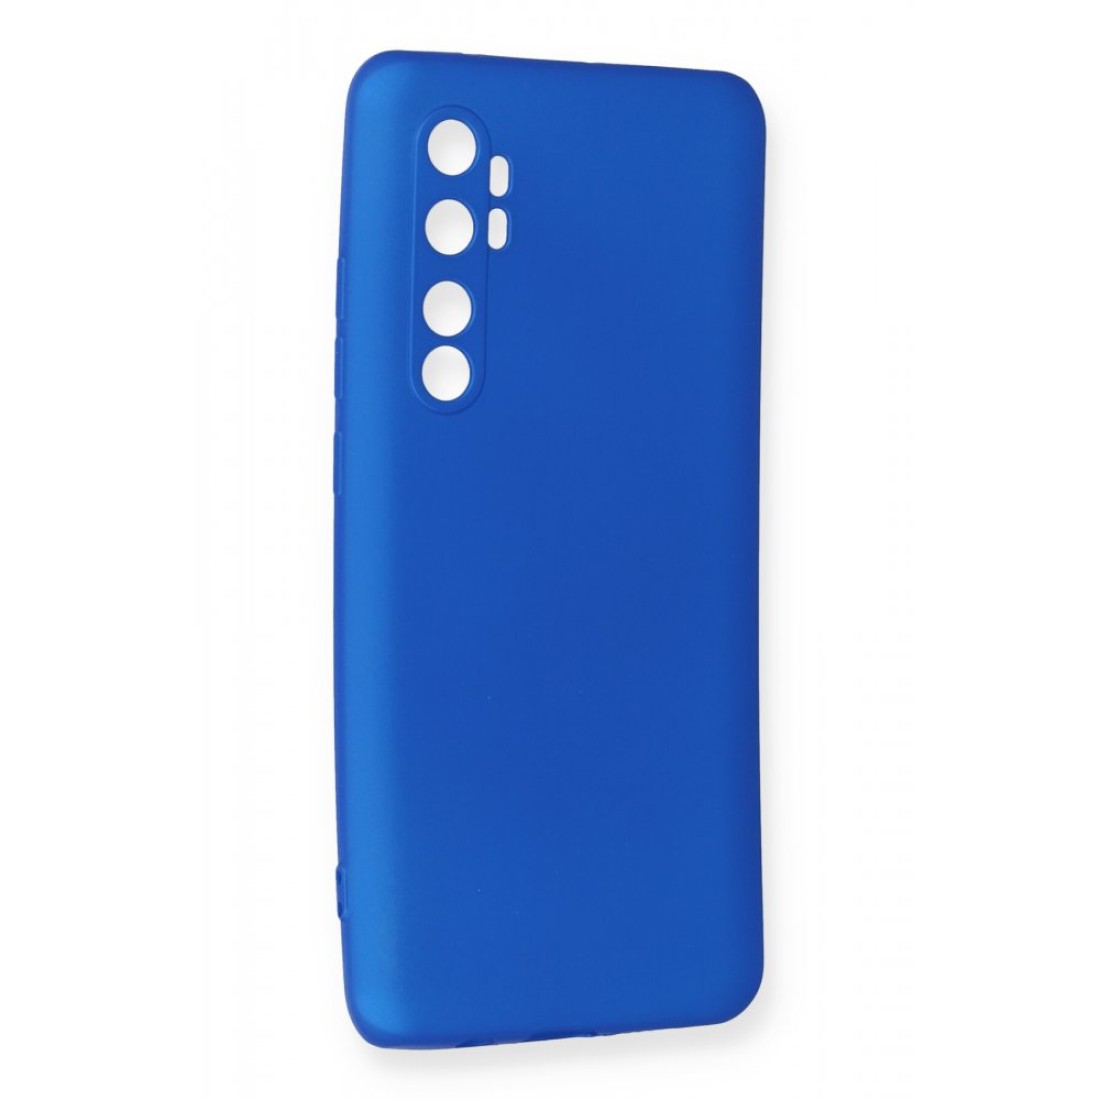 Xiaomi Mi Note 10 Lite Kılıf Premium Rubber Silikon - Mavi